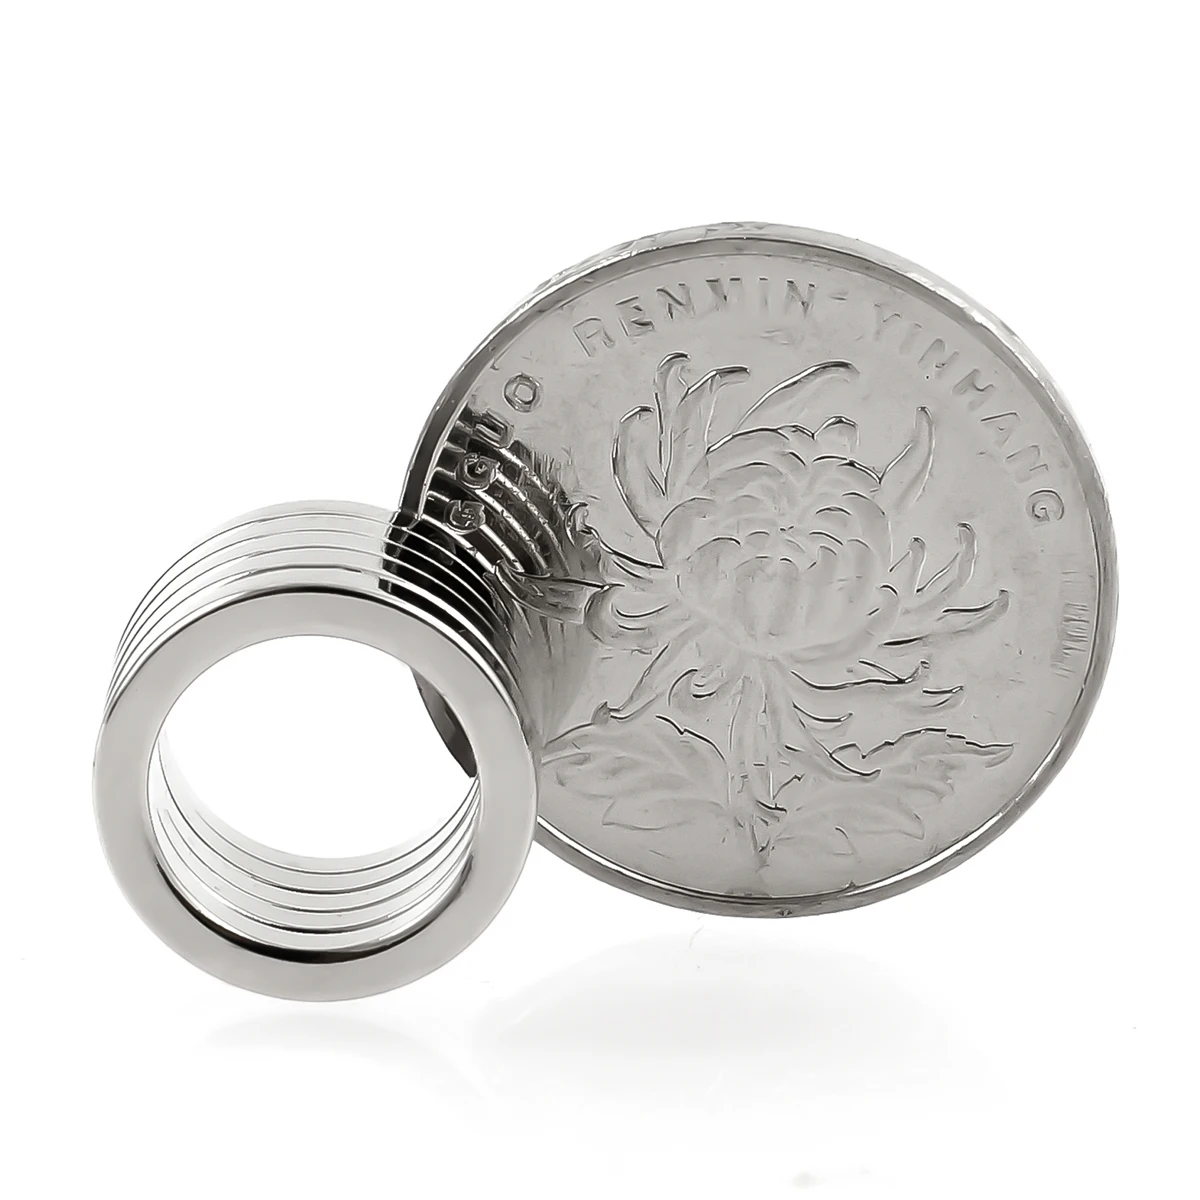 ZOOFOXS 10 шт. 15x2 мм отверстие 11 мм маленькое круглое кольцо неодимовый магнит Постоянные редкоземельные магниты 15*2-11 мм для рукоделия